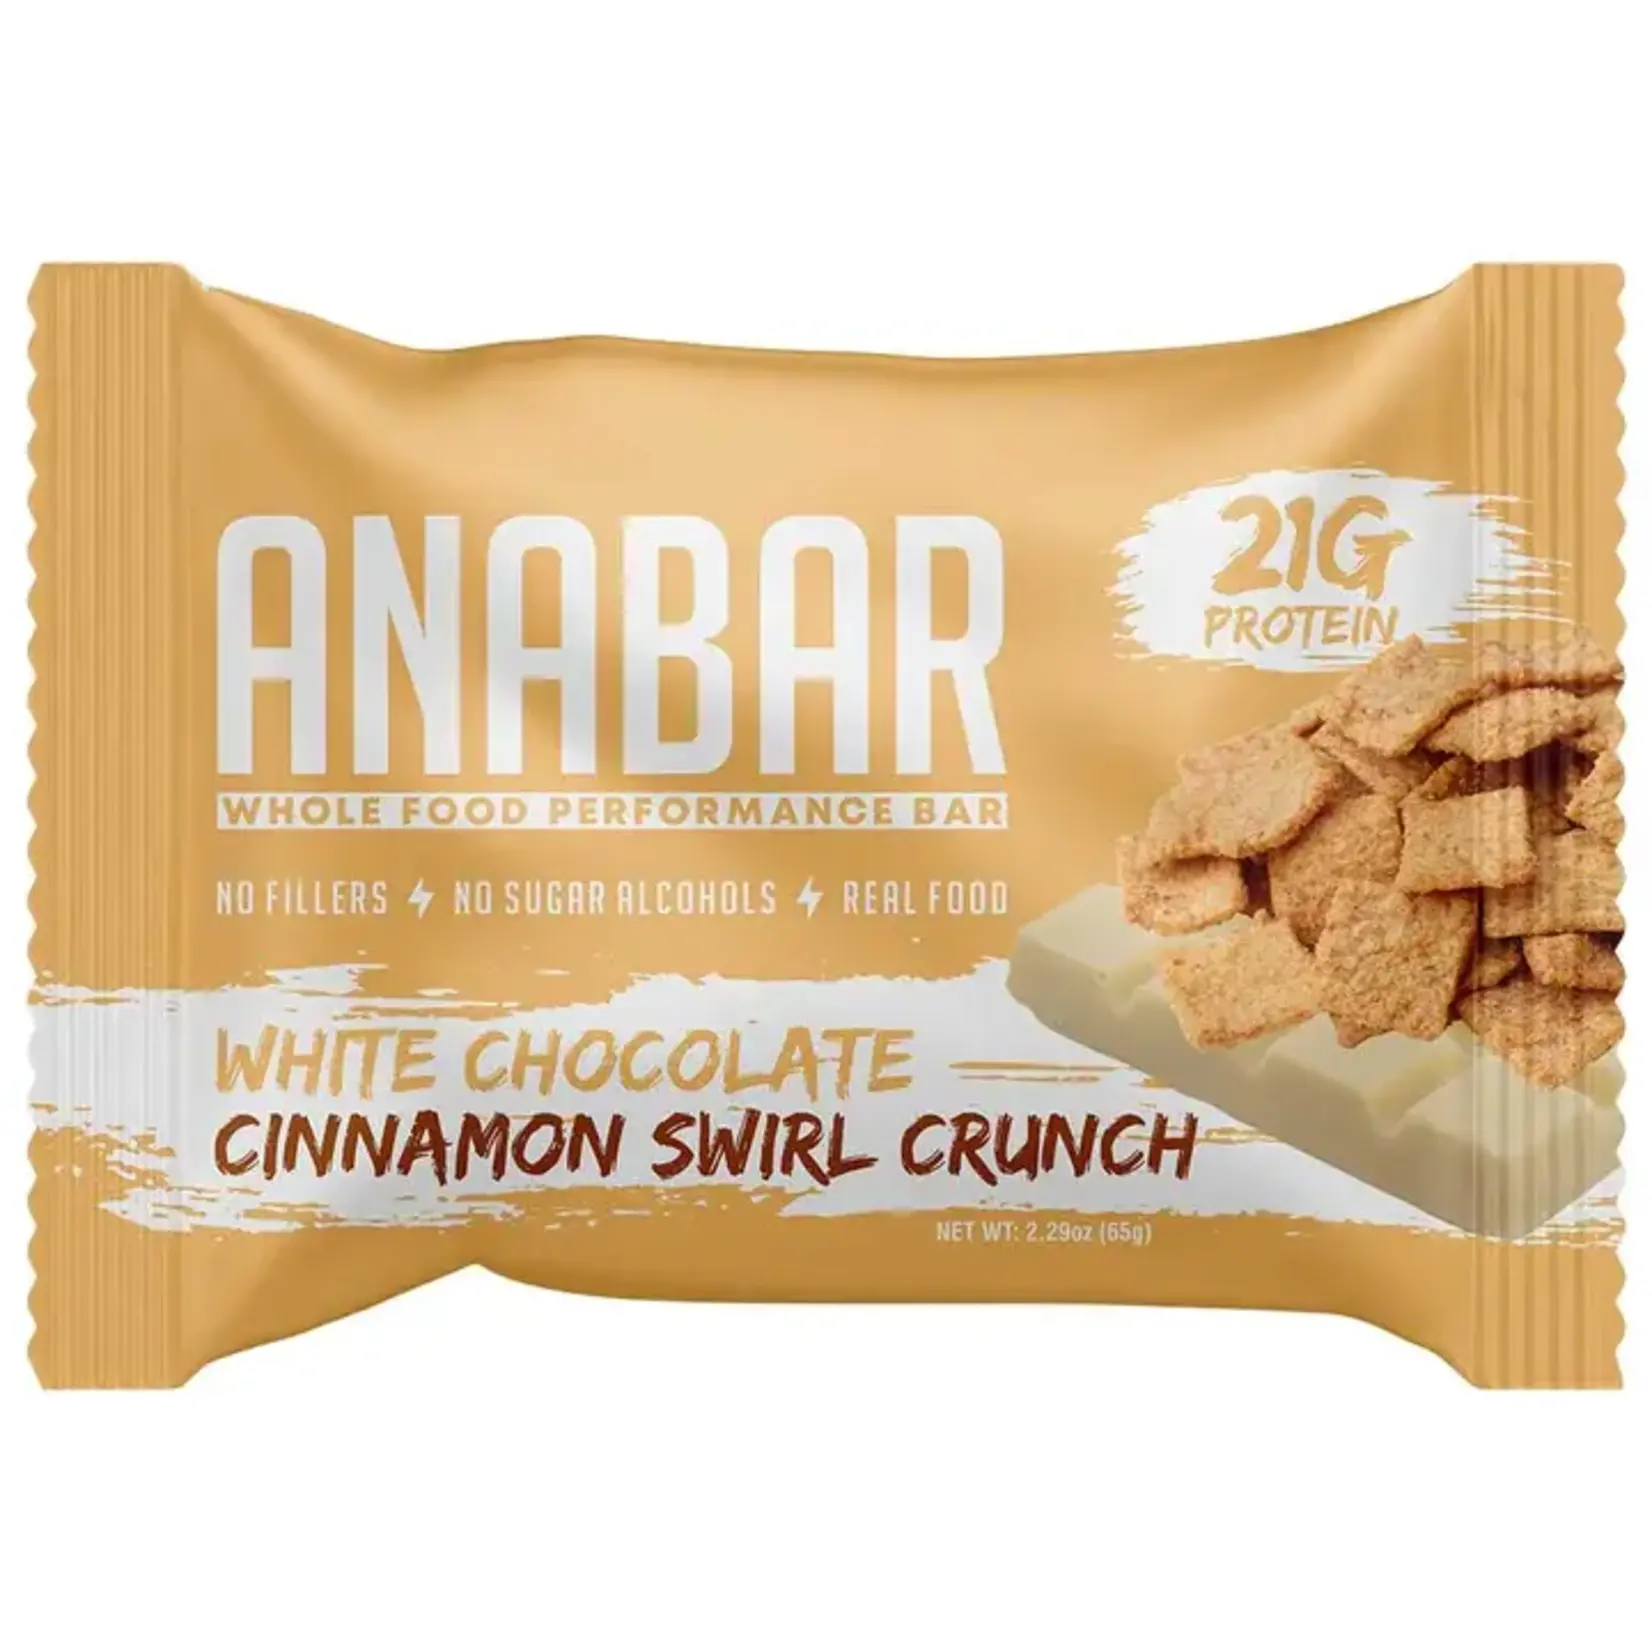 ANABAR ANABAR Cinnamon Swirl Crunch